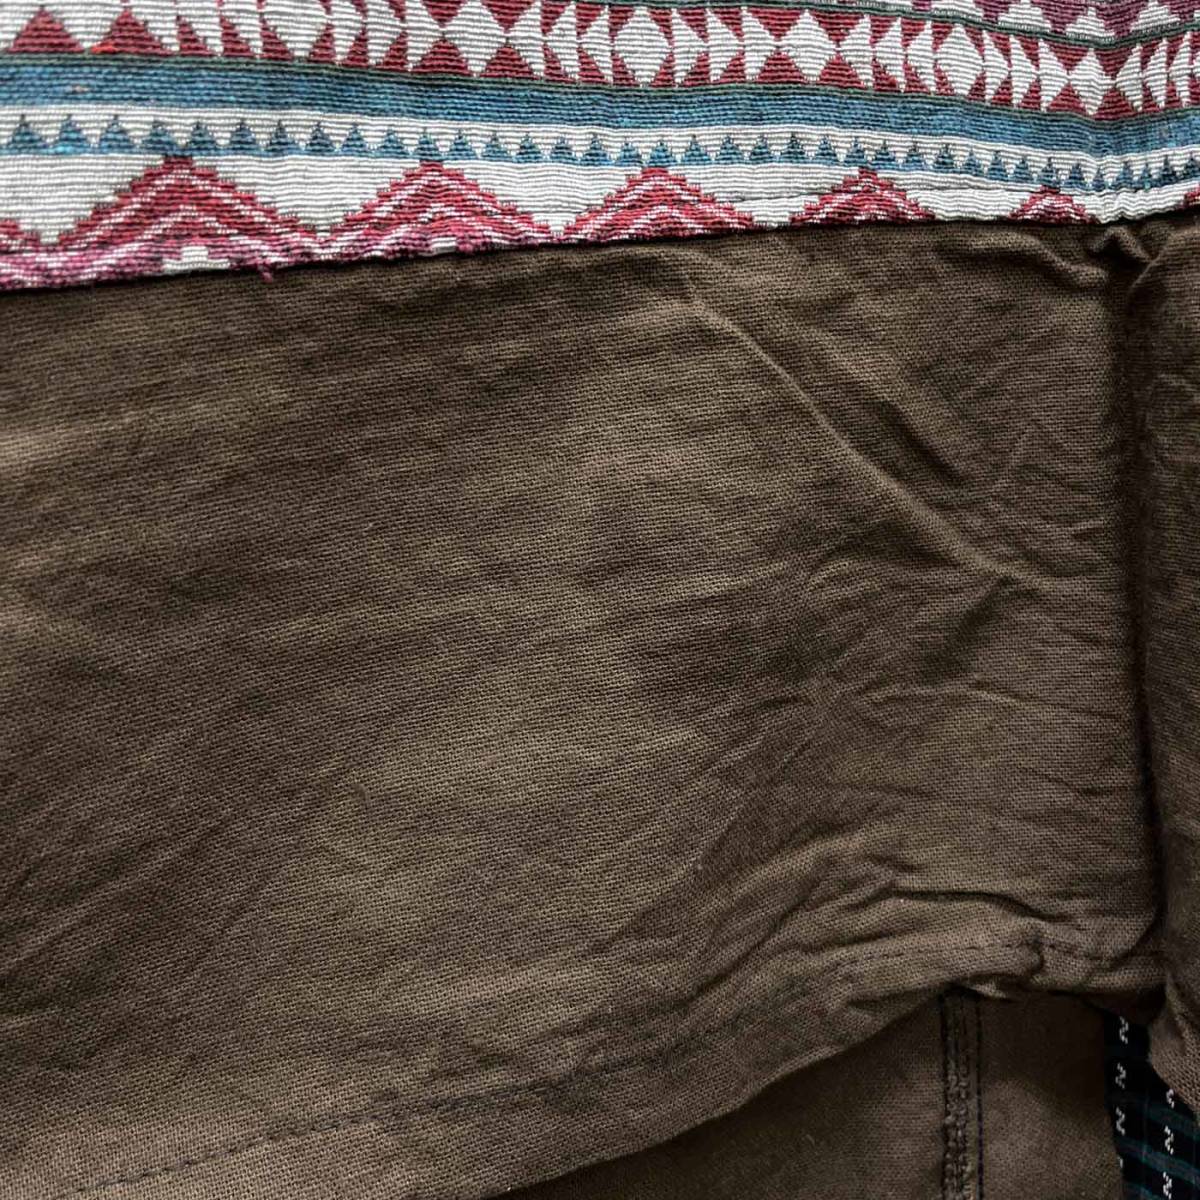 エスニック ロングコート 大きいサイズ 羽織り エスニック柄 民族柄 メンズ レディース フリーサイズ タイ製品 c-148_画像9